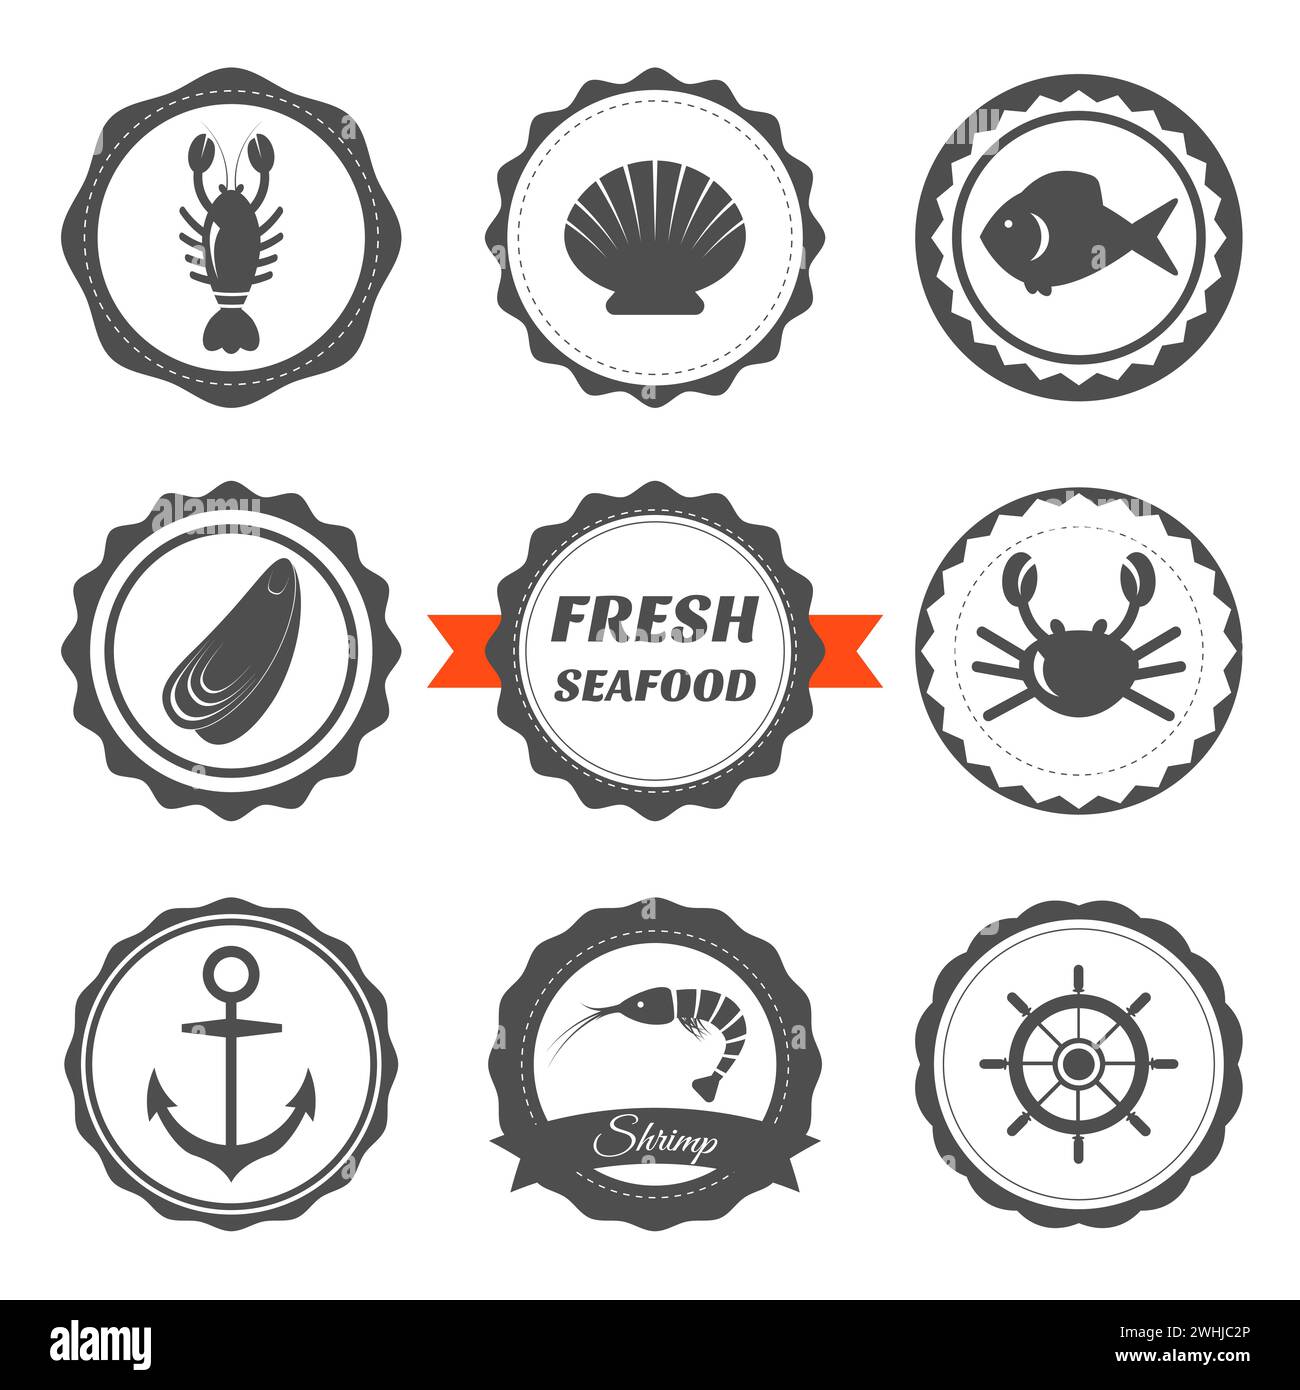 Set mit Etiketten für Meeresfrüchte. Logos und Designelemente für Meeresfrüchte. Vektorabbildung Stock Vektor